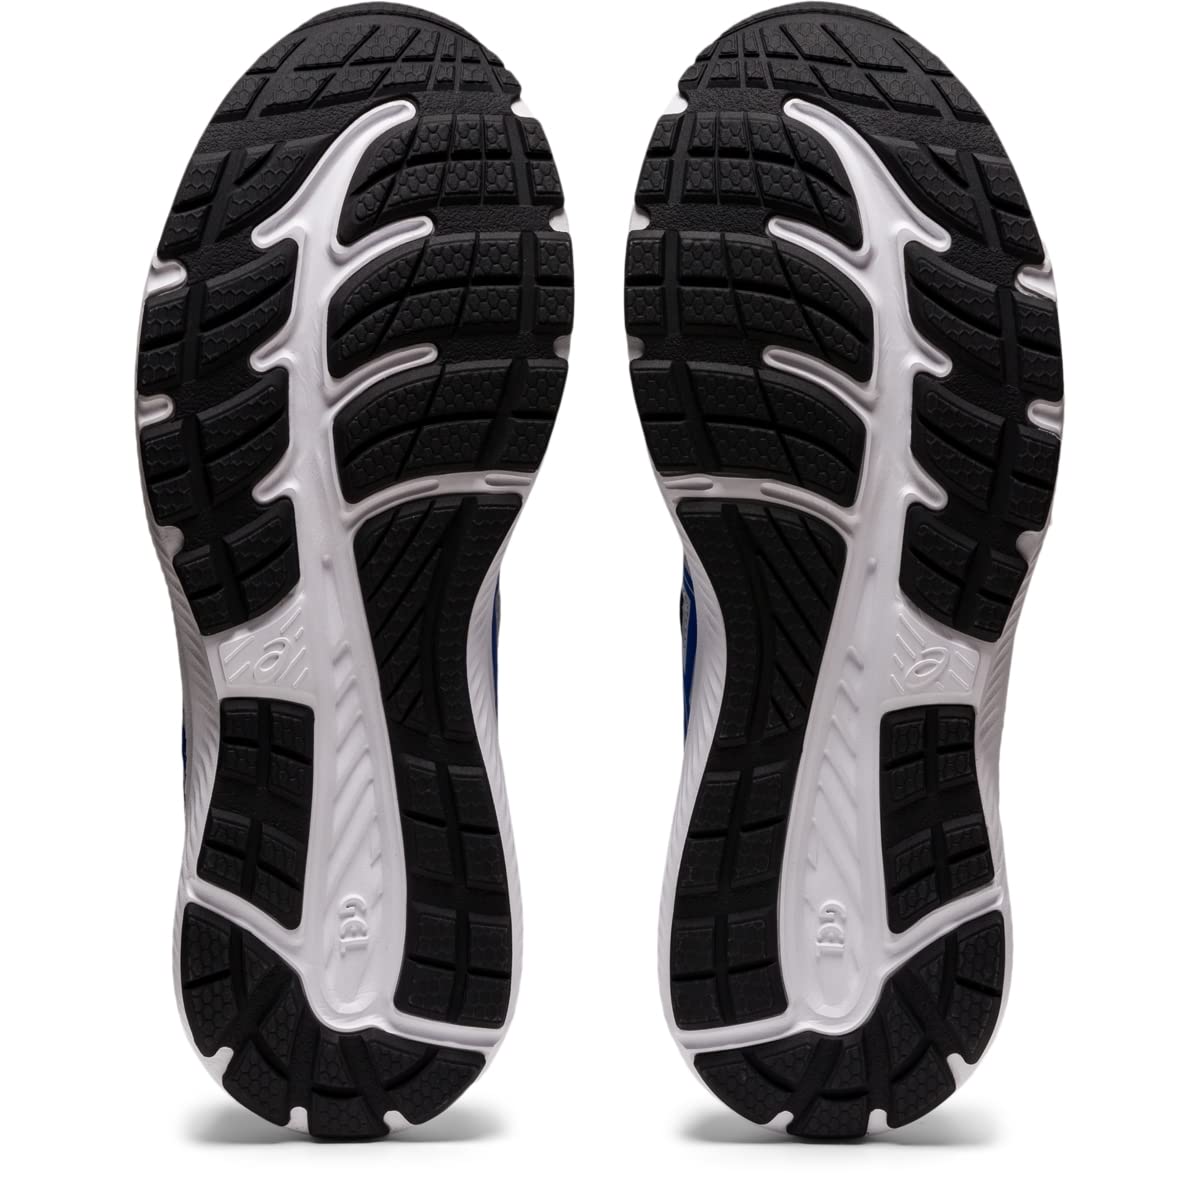 ASICS Men's Gel-Contend 7 Running Shoes